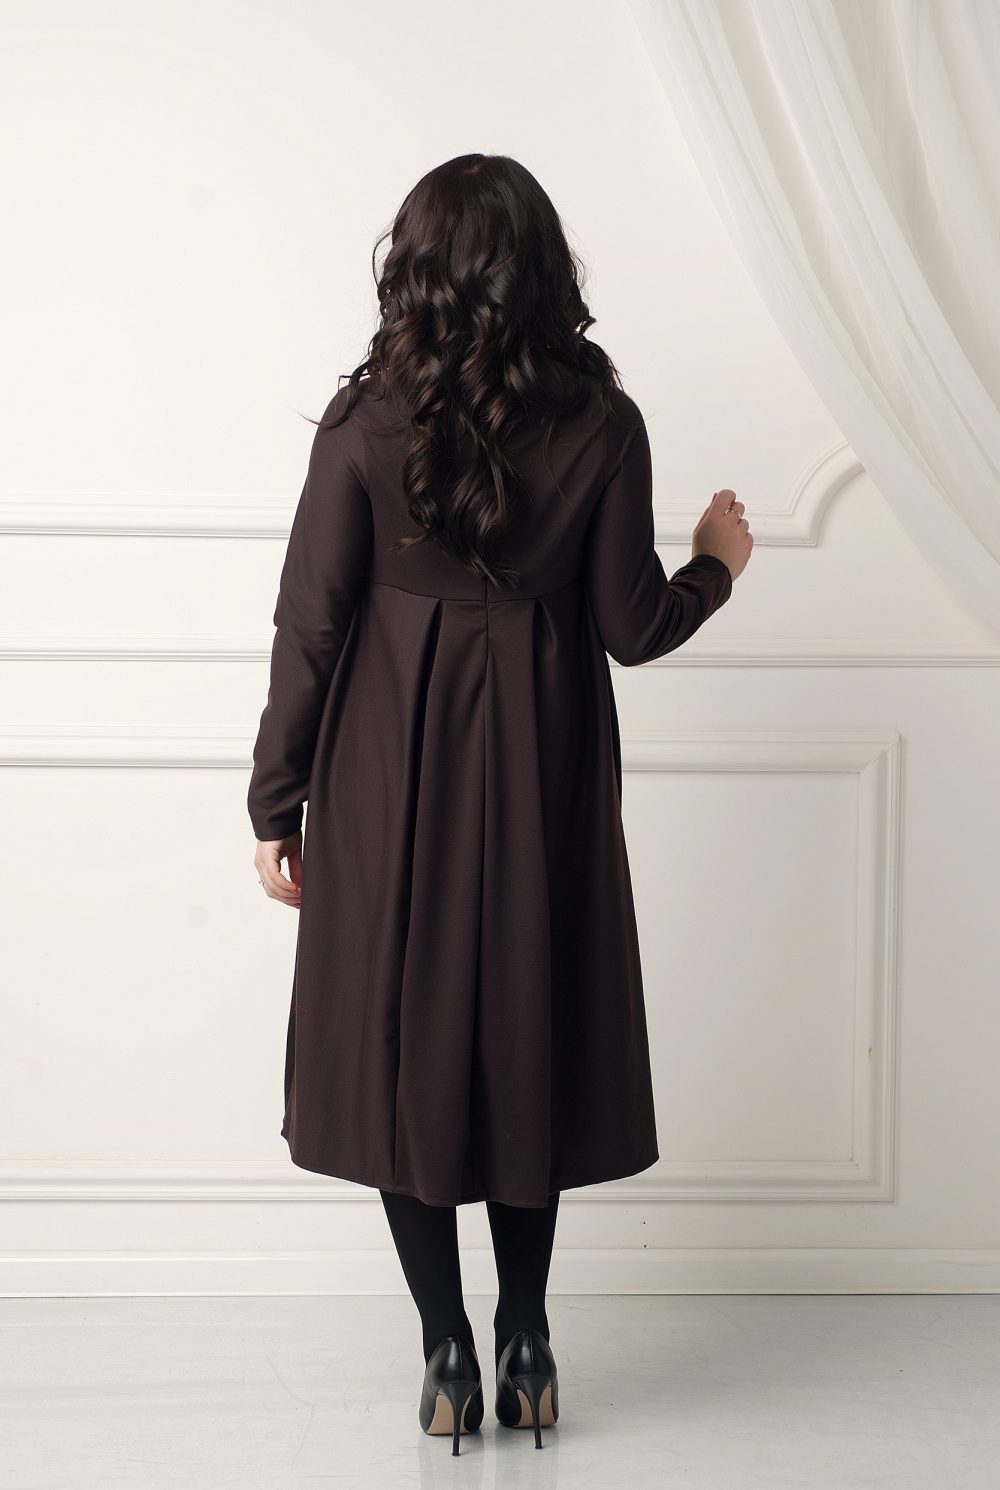 Теплое платье бохо "Горячий шоколад" от дизайнера Любовь Джбааи 3